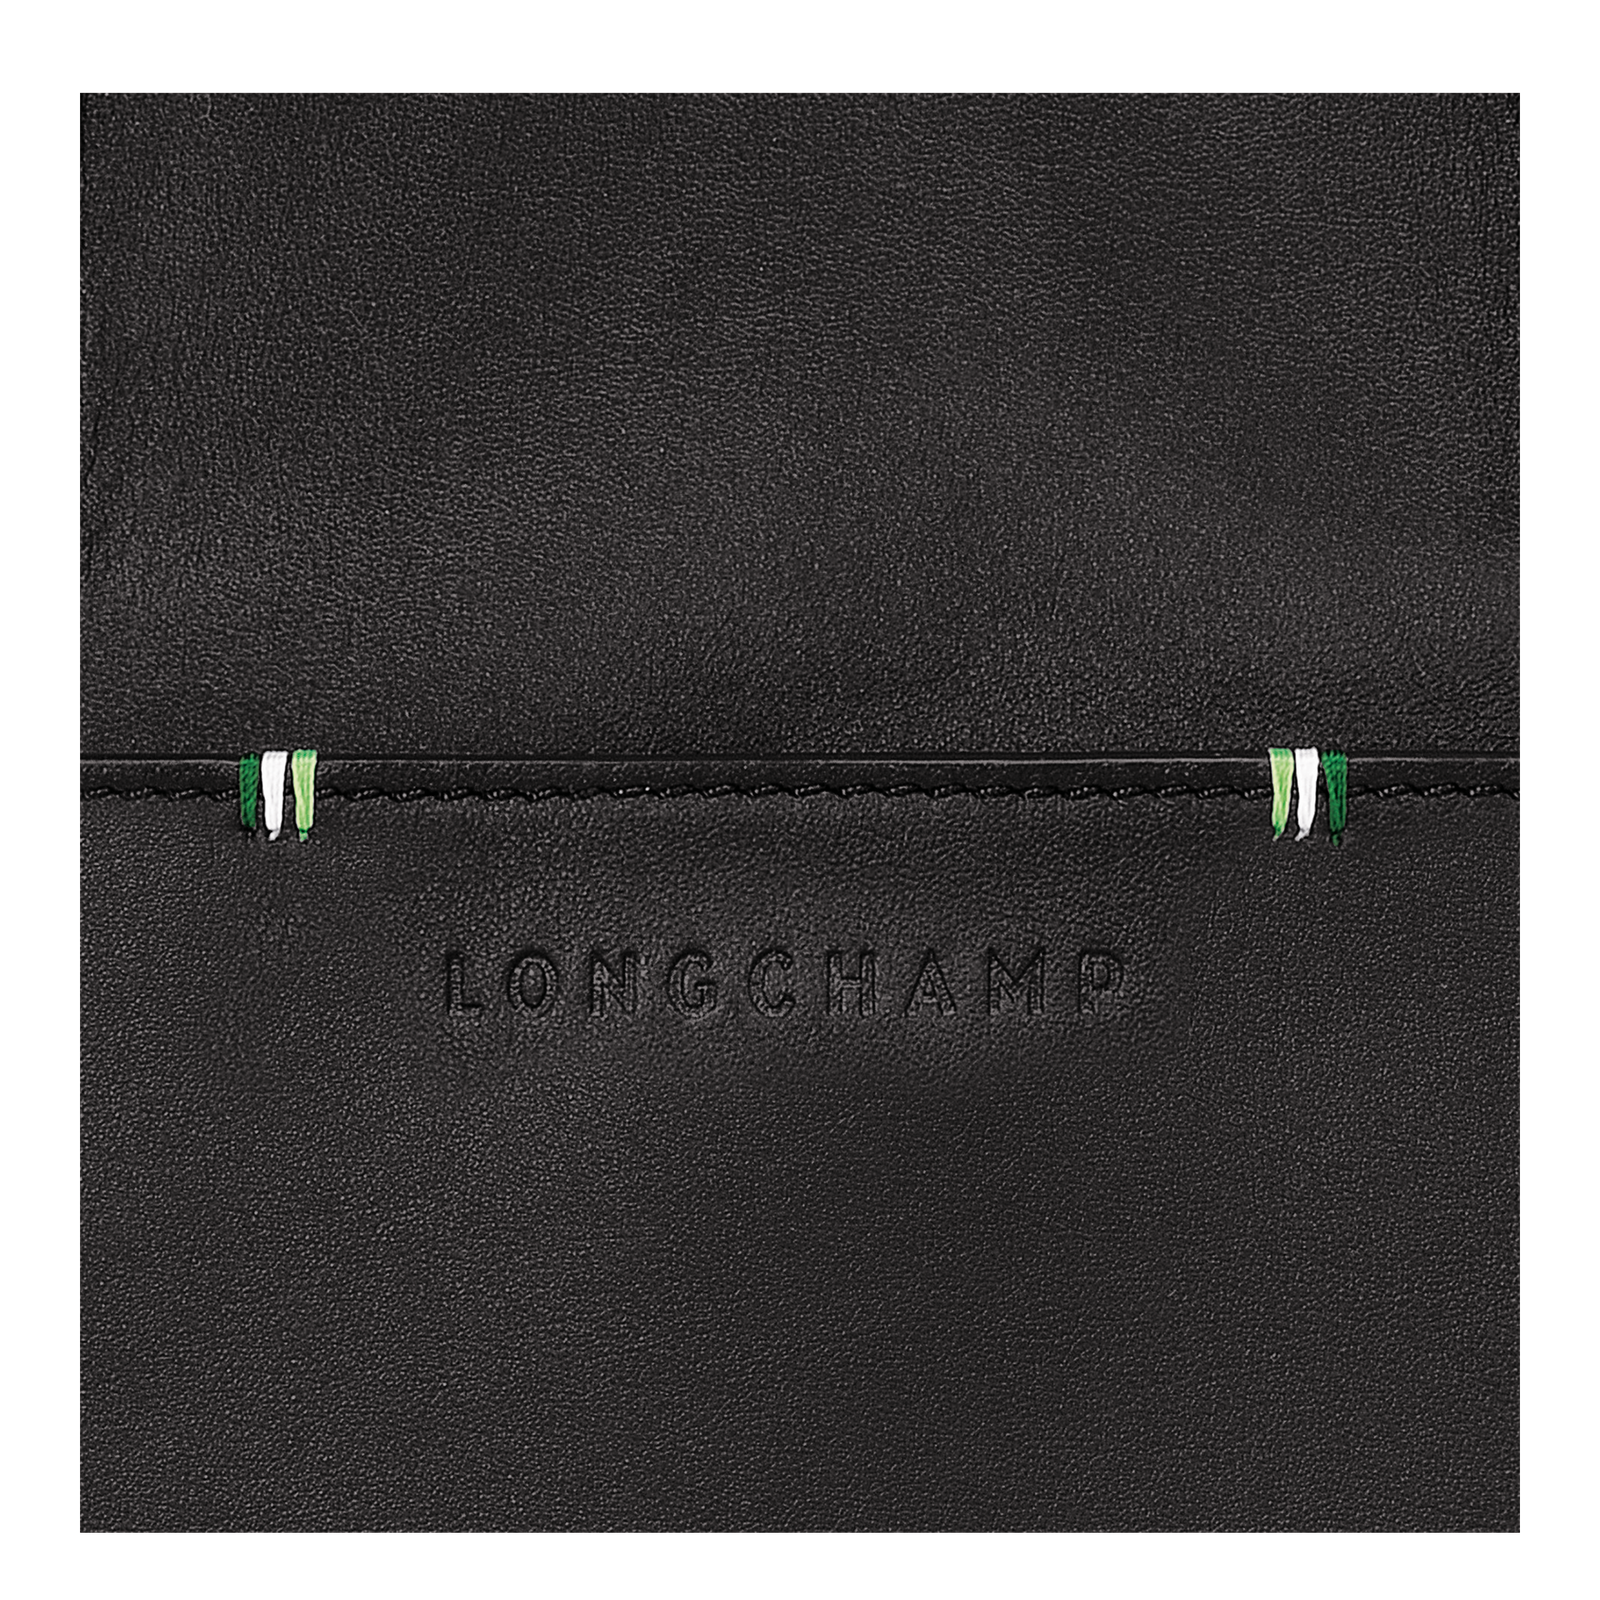 Longchamp sur Seine Maletín S, Negro